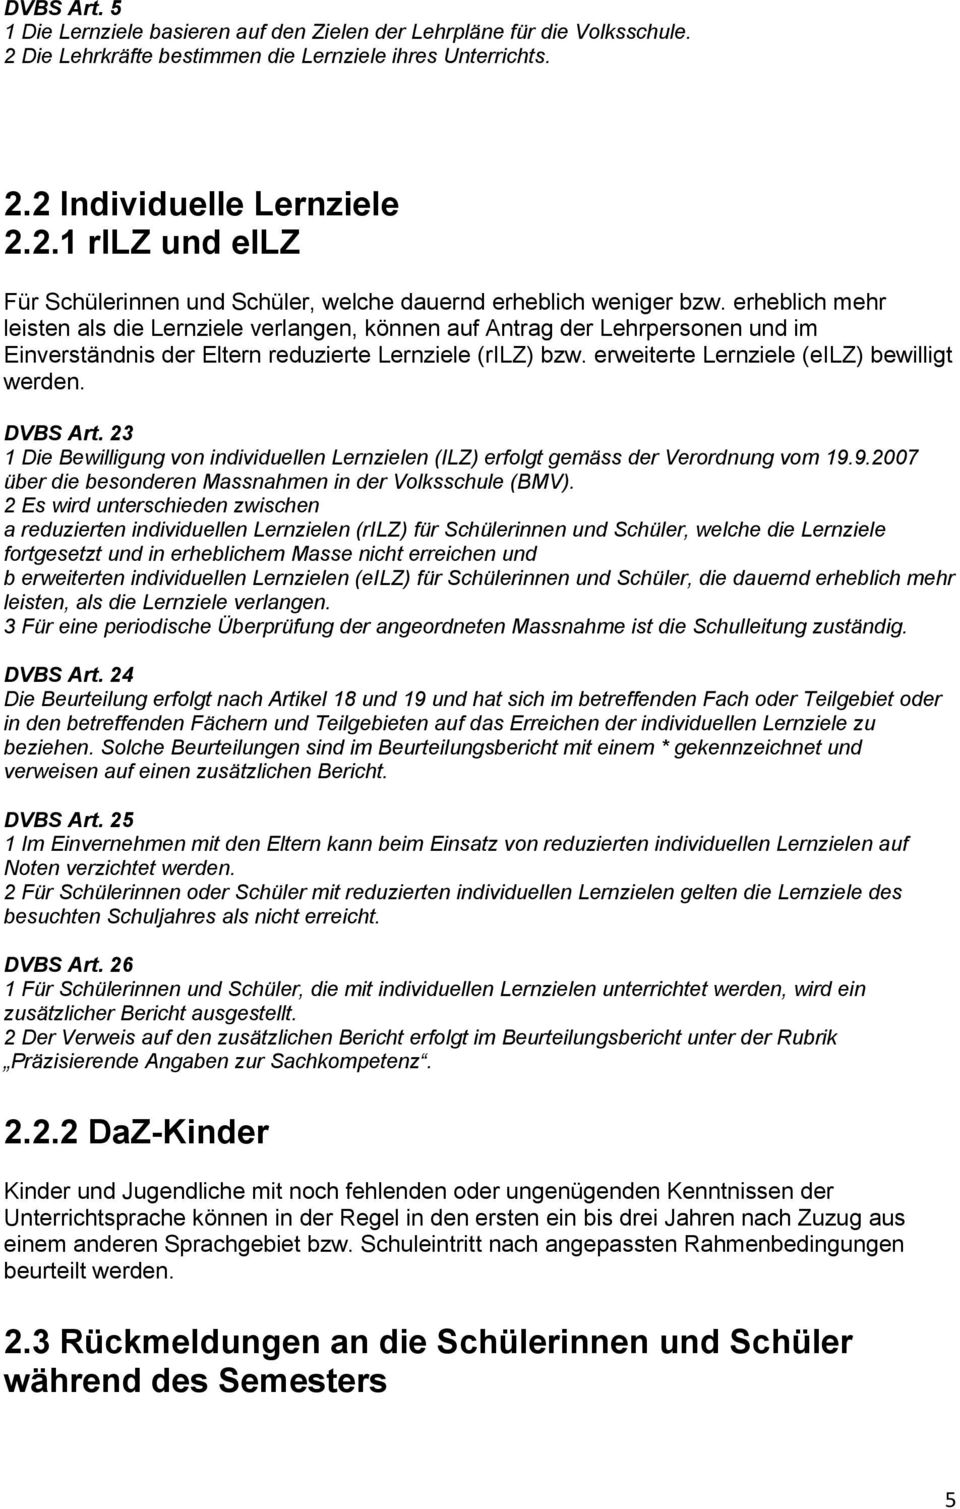 DVBS Art. 23 1 Die Bewilligung von individuellen Lernzielen (ILZ) erfolgt gemäss der Verordnung vom 19.9.2007 über die besonderen Massnahmen in der Volksschule (BMV).